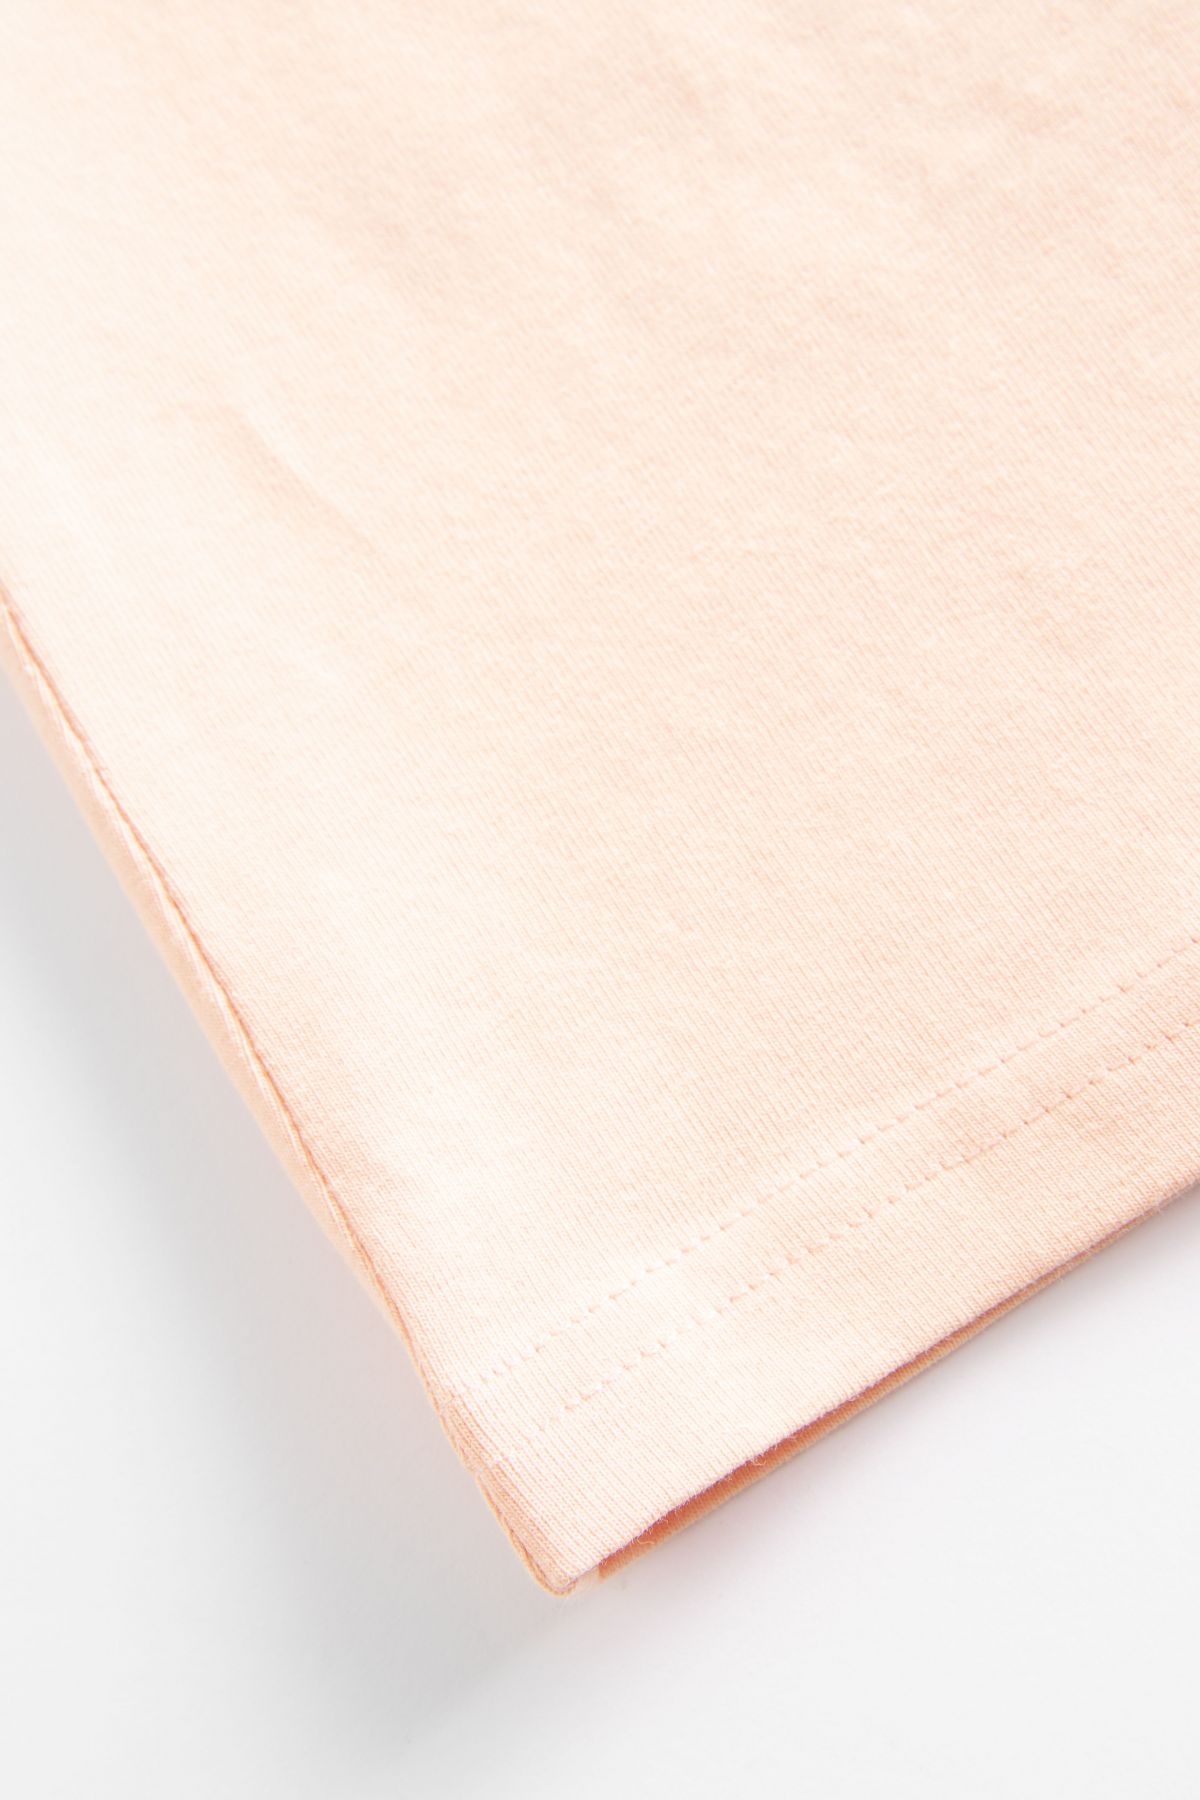 T-Shirt ohne Ärmel Pink mit einem Farbdruck auf der Vorderseite 2159945